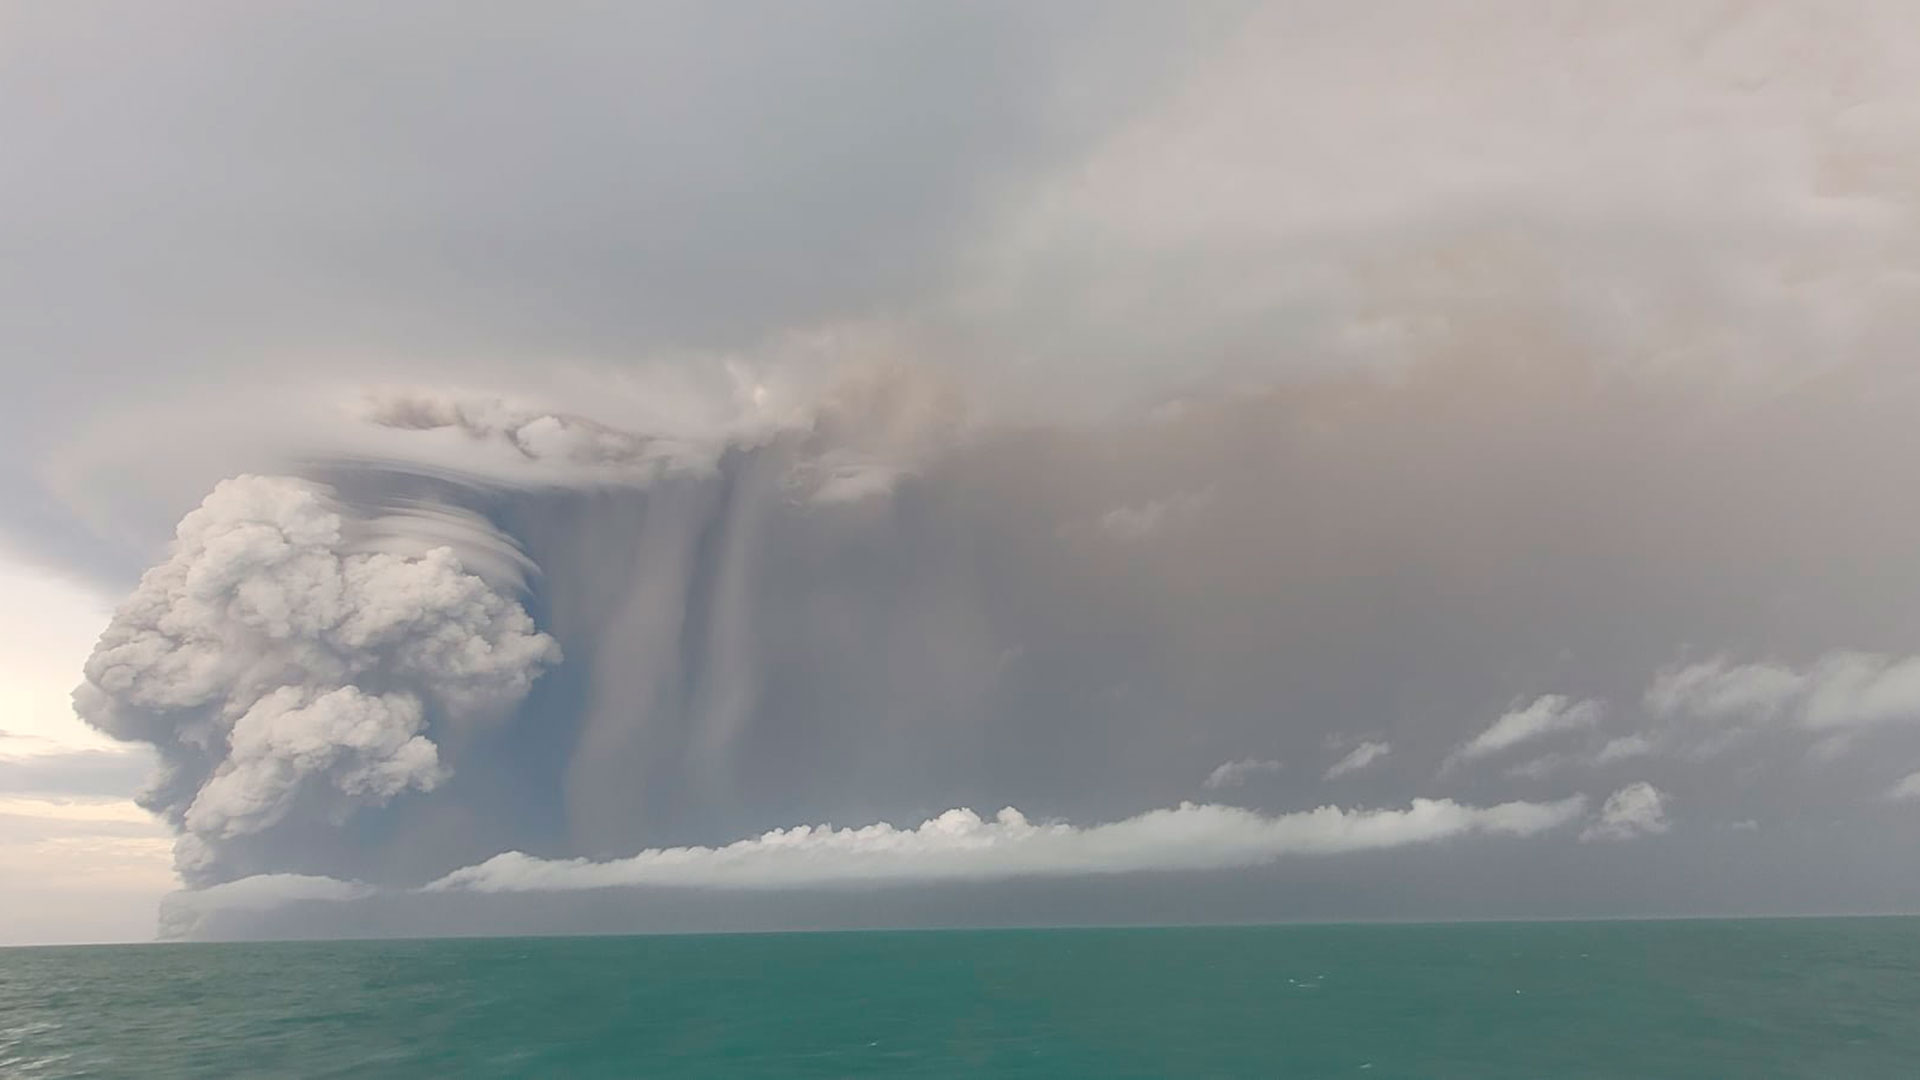 El volcán submarino Hunga-Tonga-Hunga-Ha’apai, ubicado a unos 65 kilómetros al norte de la isla tongana de Tongatapu, registró una erupción de unos ocho minutos (Crédito: Servicio Geológico de Tonga)